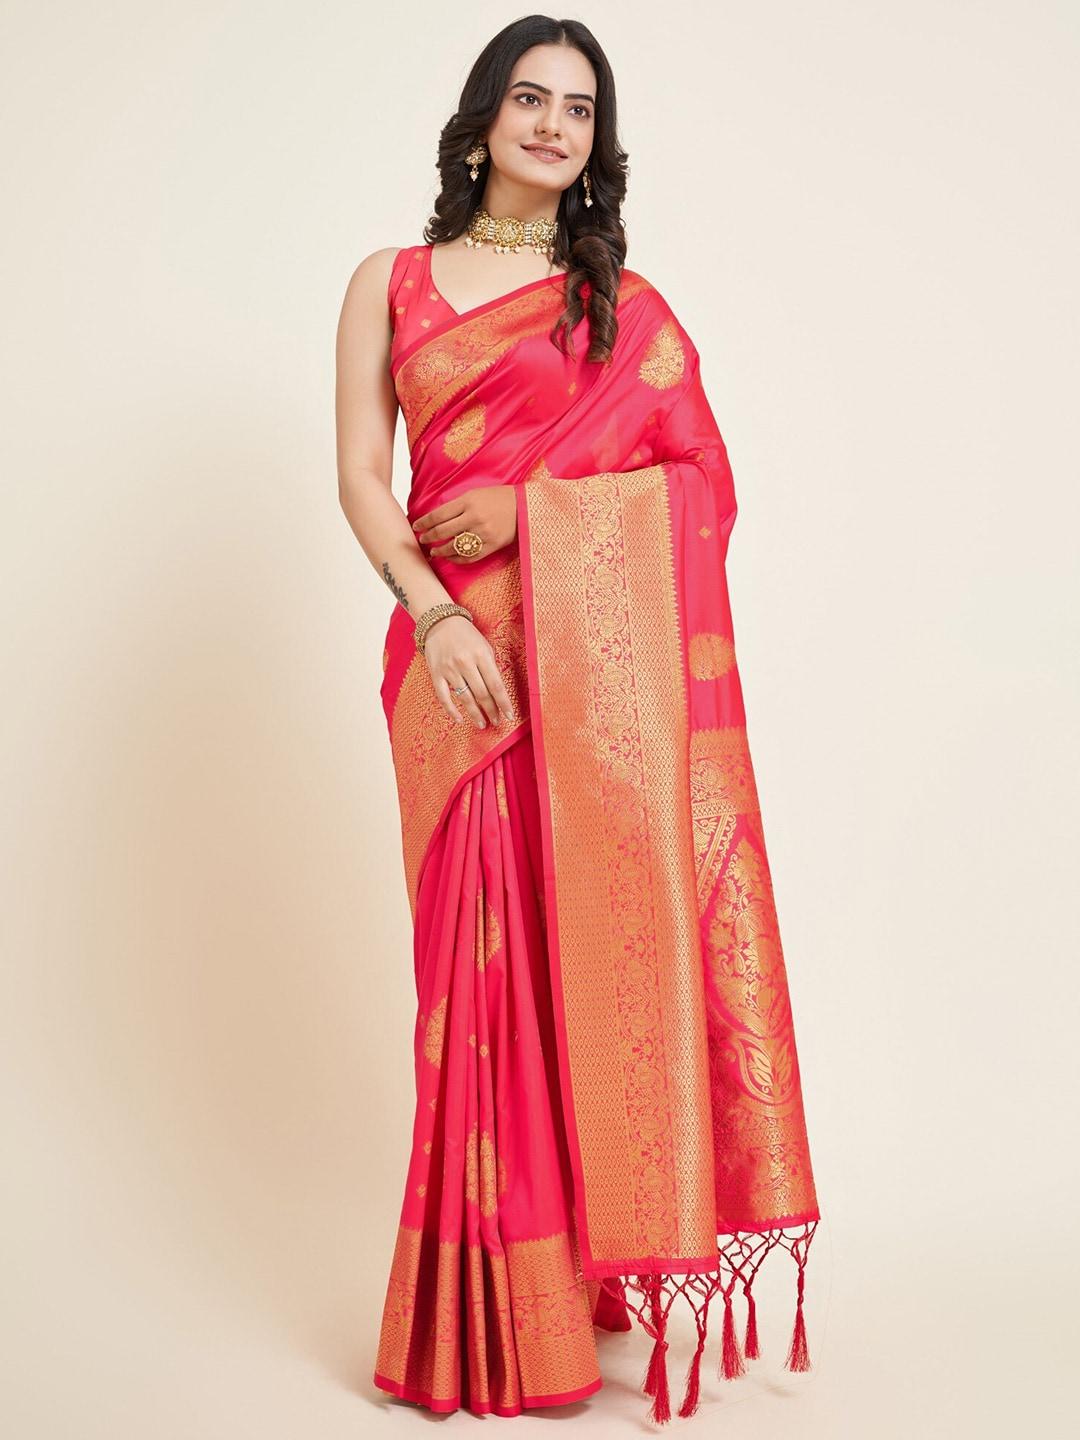 LeeliPeeri Designer Peach-Coloured & Gold-Toned Ethnic Motifs Zari Silk Blend Banarasi Saree